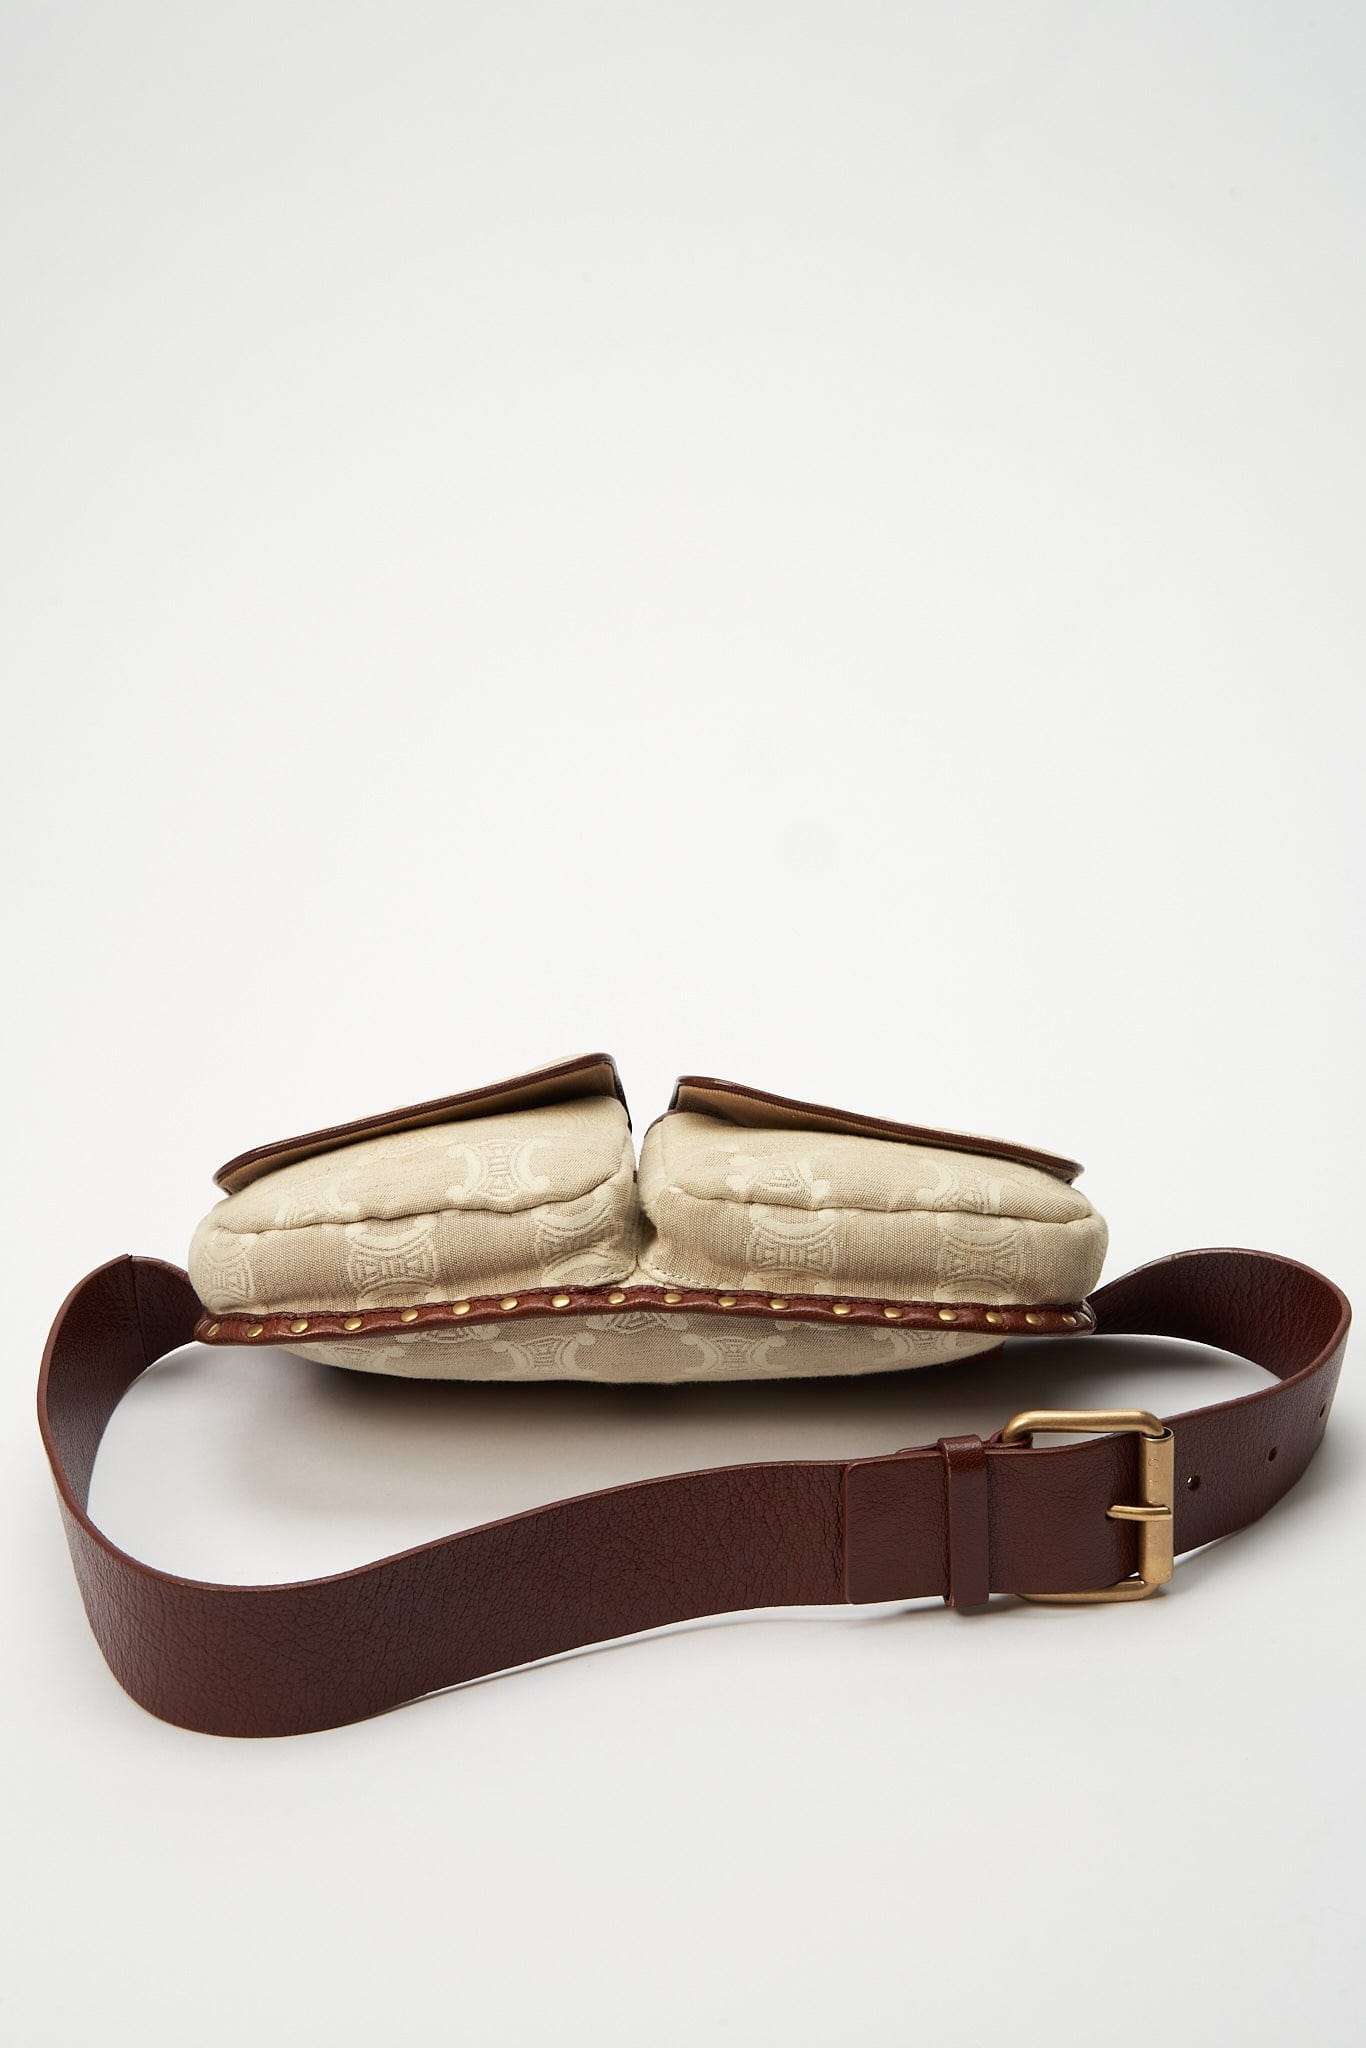 Vintage Celine Bag cream Belt or Sling Bag